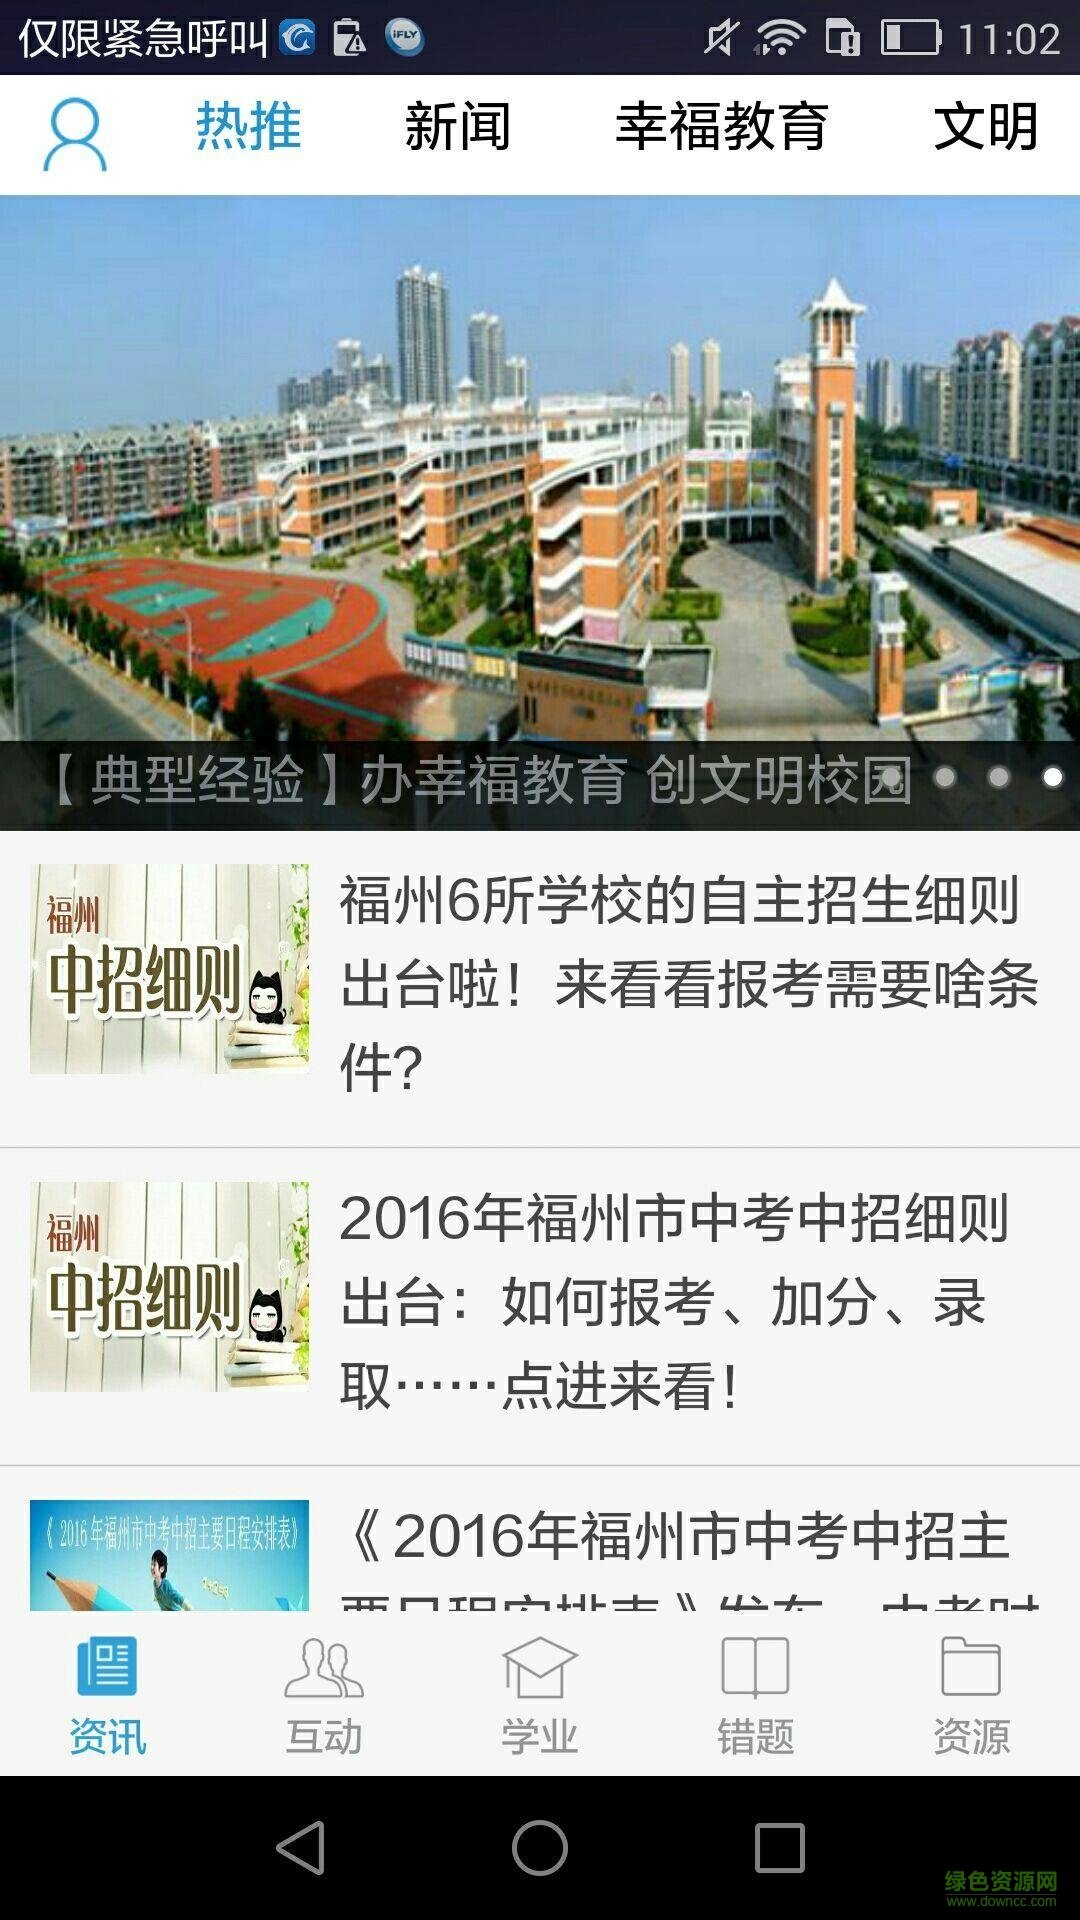 福州教育手机报ios版 v3.7 iphone官方版 1